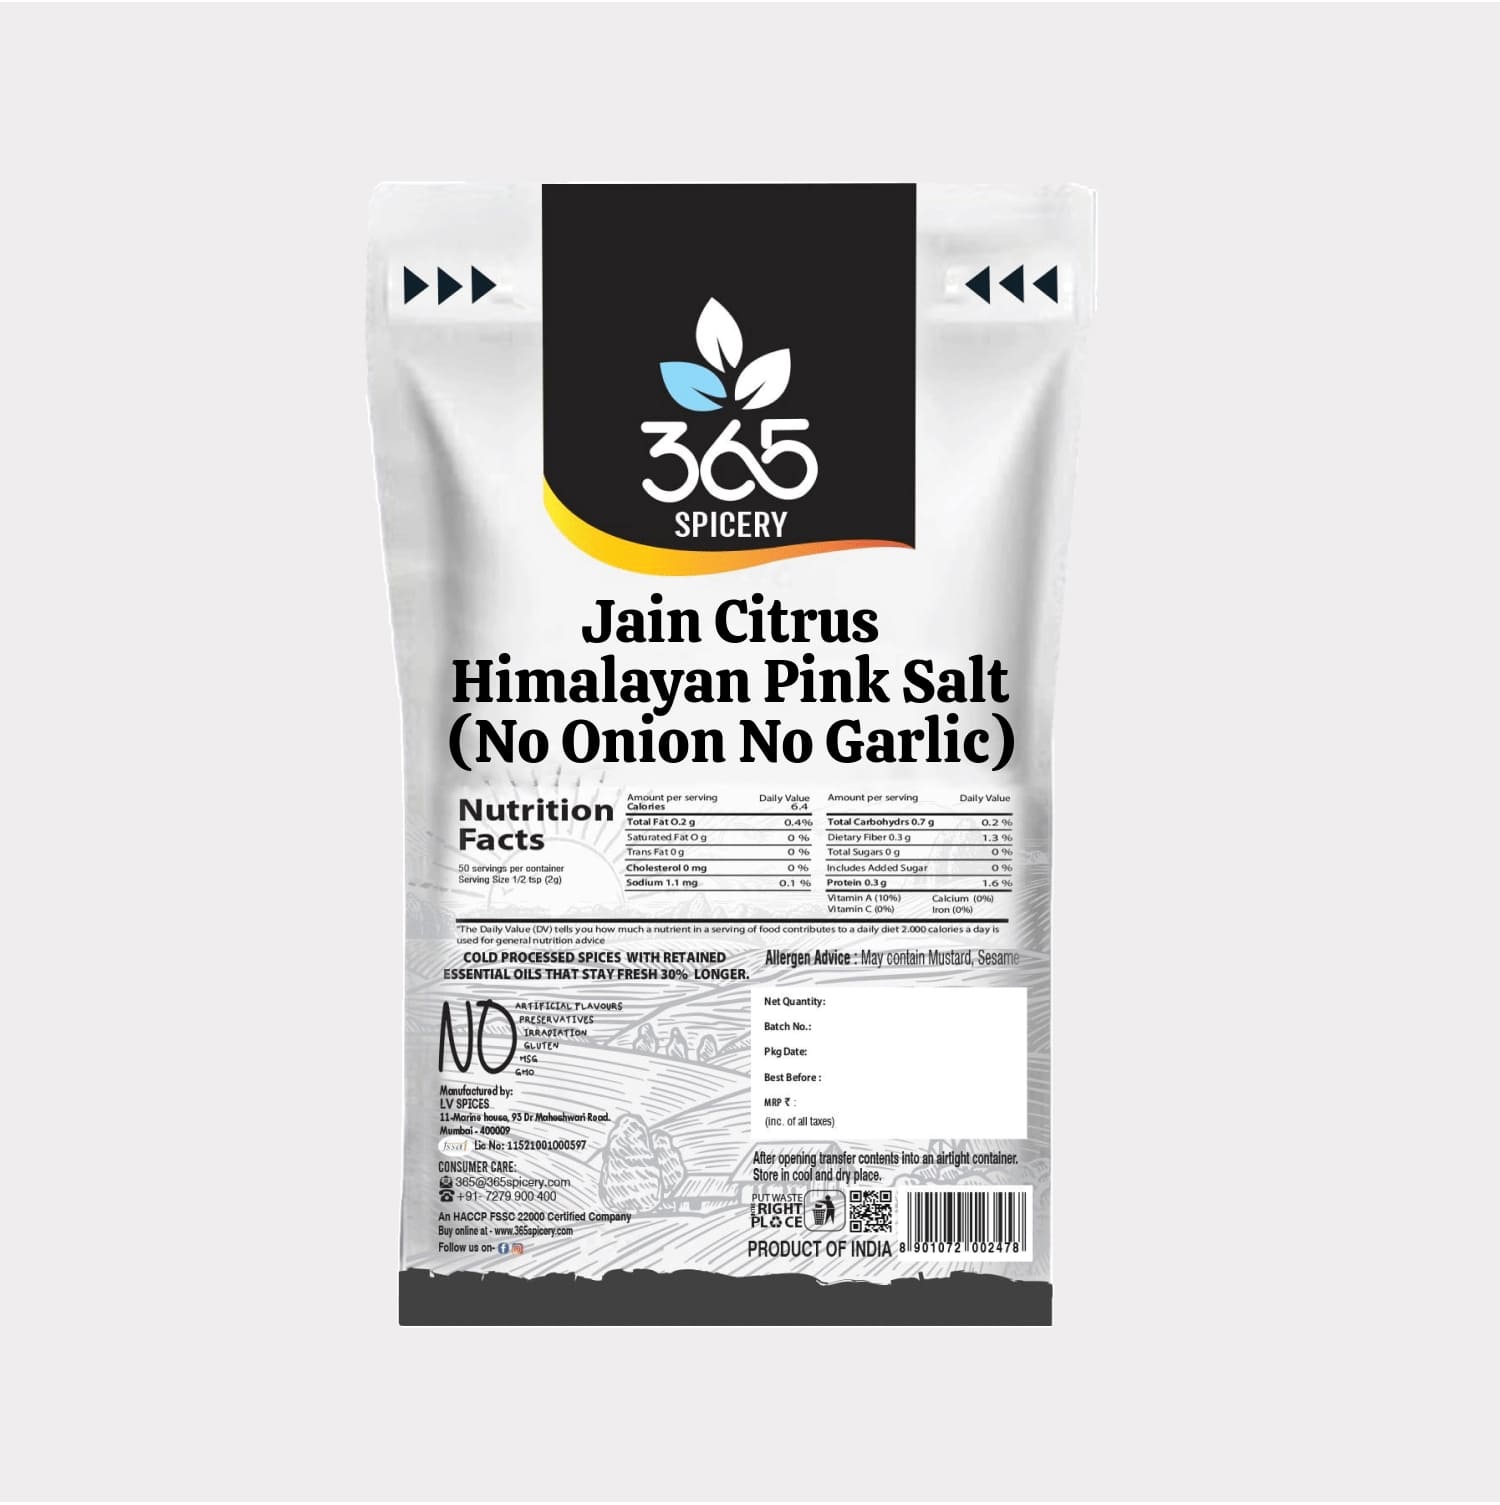 Jain Citrus Himalayan Pink Salt (No Onion No Garlic)